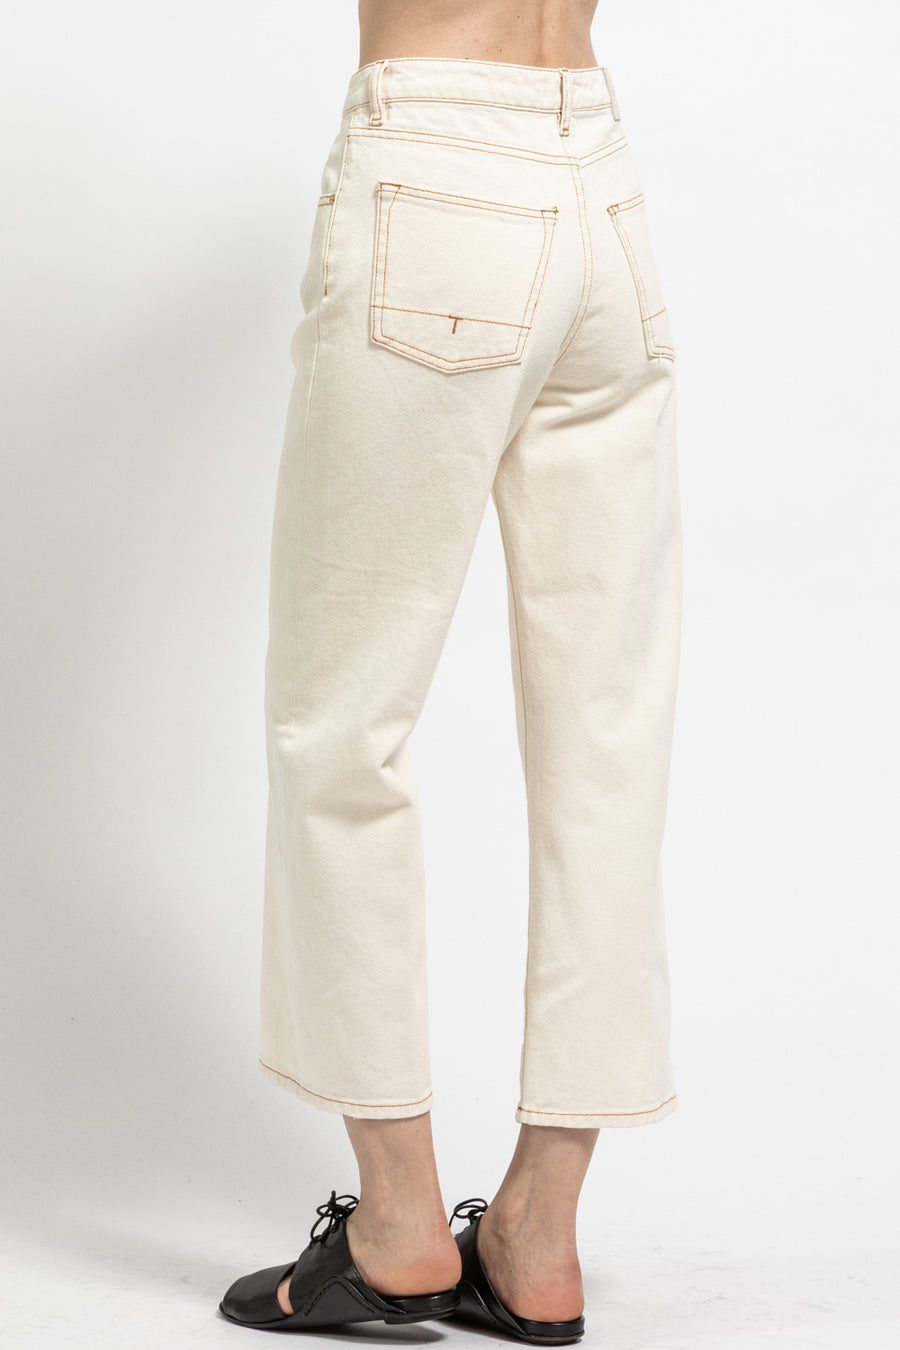 Pantalone Jeans da donna in cotone écru Zaira